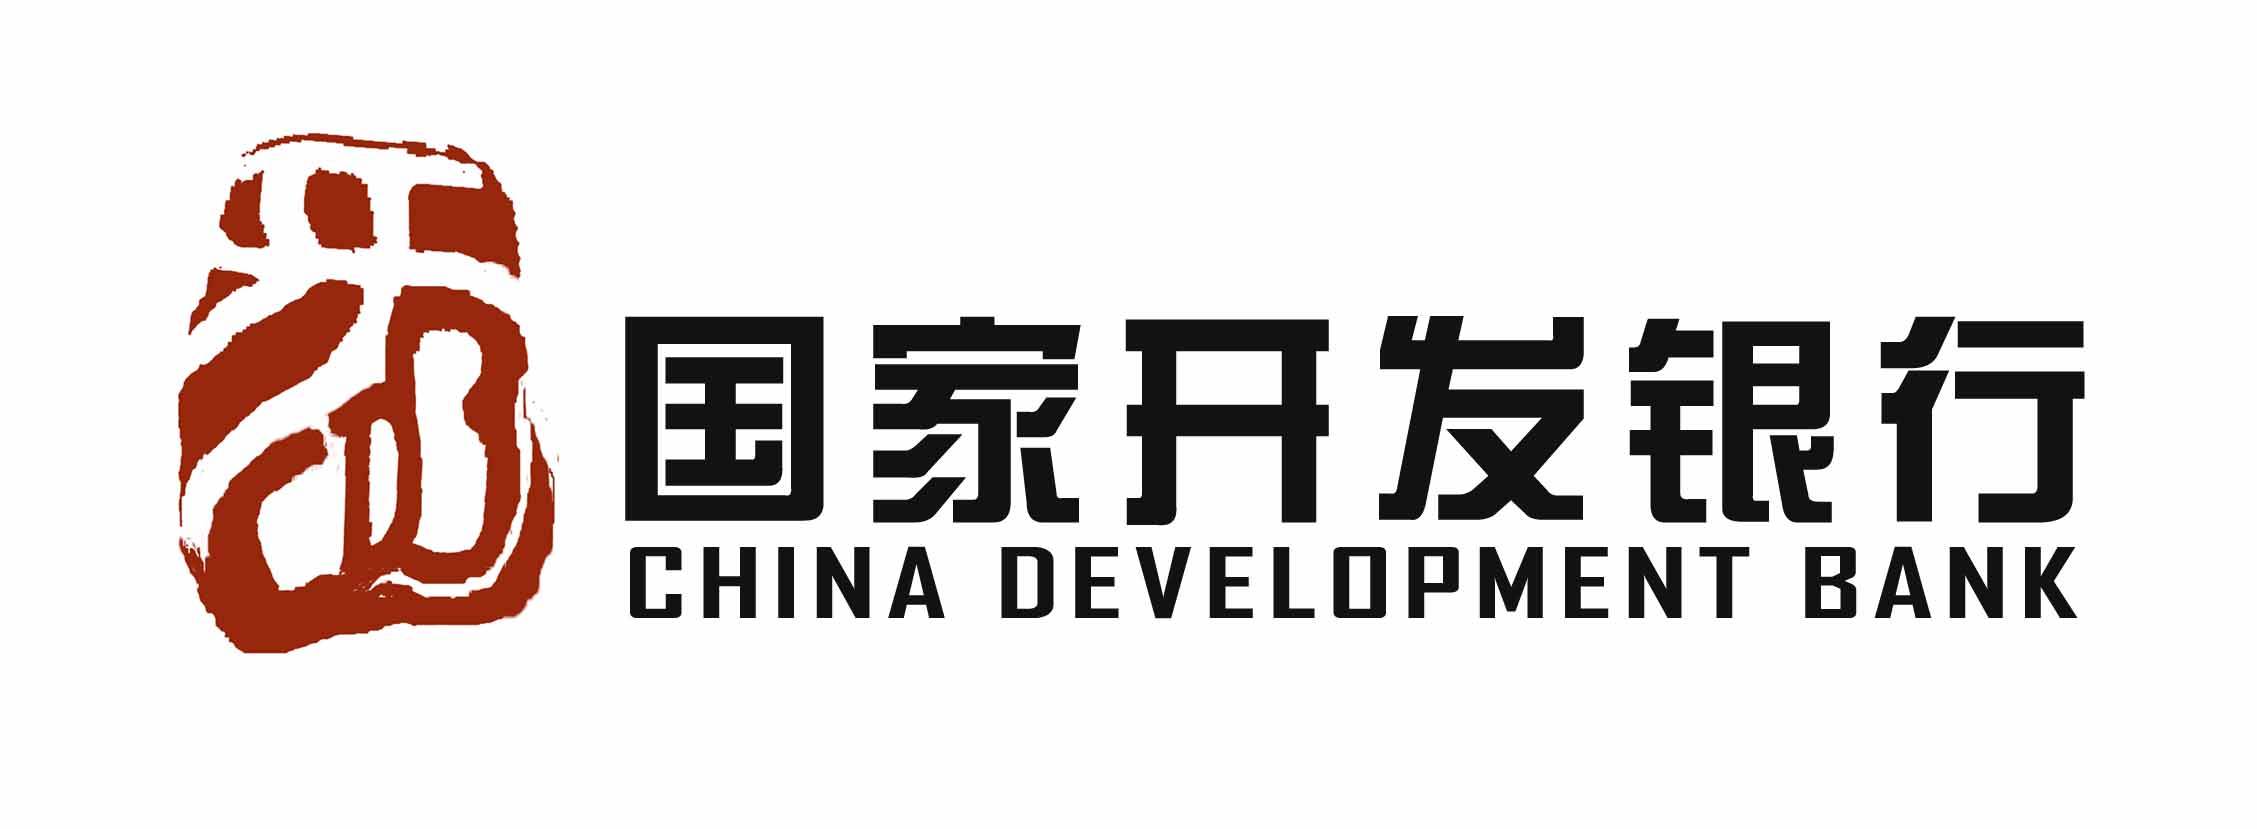 国家开发银行 logo图片